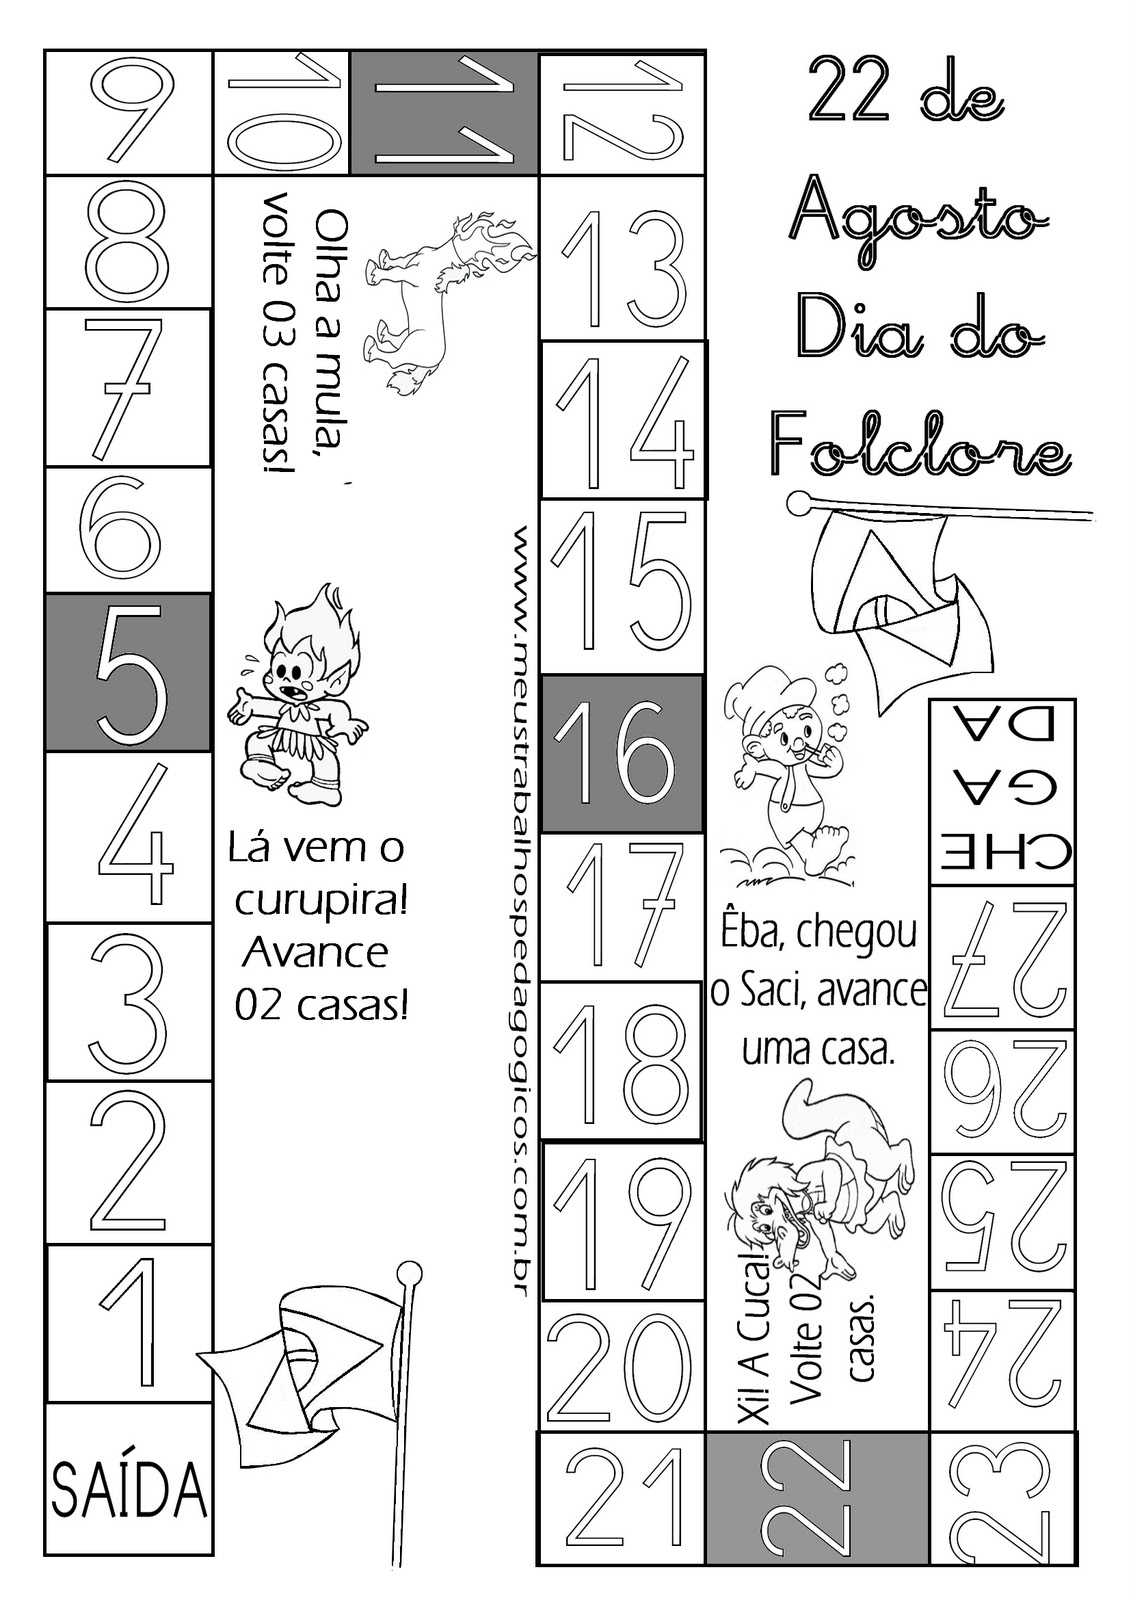 Tema de TCC, tabuleiro de xadrez do folclore brasileiro viraliza nas redes  - Folha PE